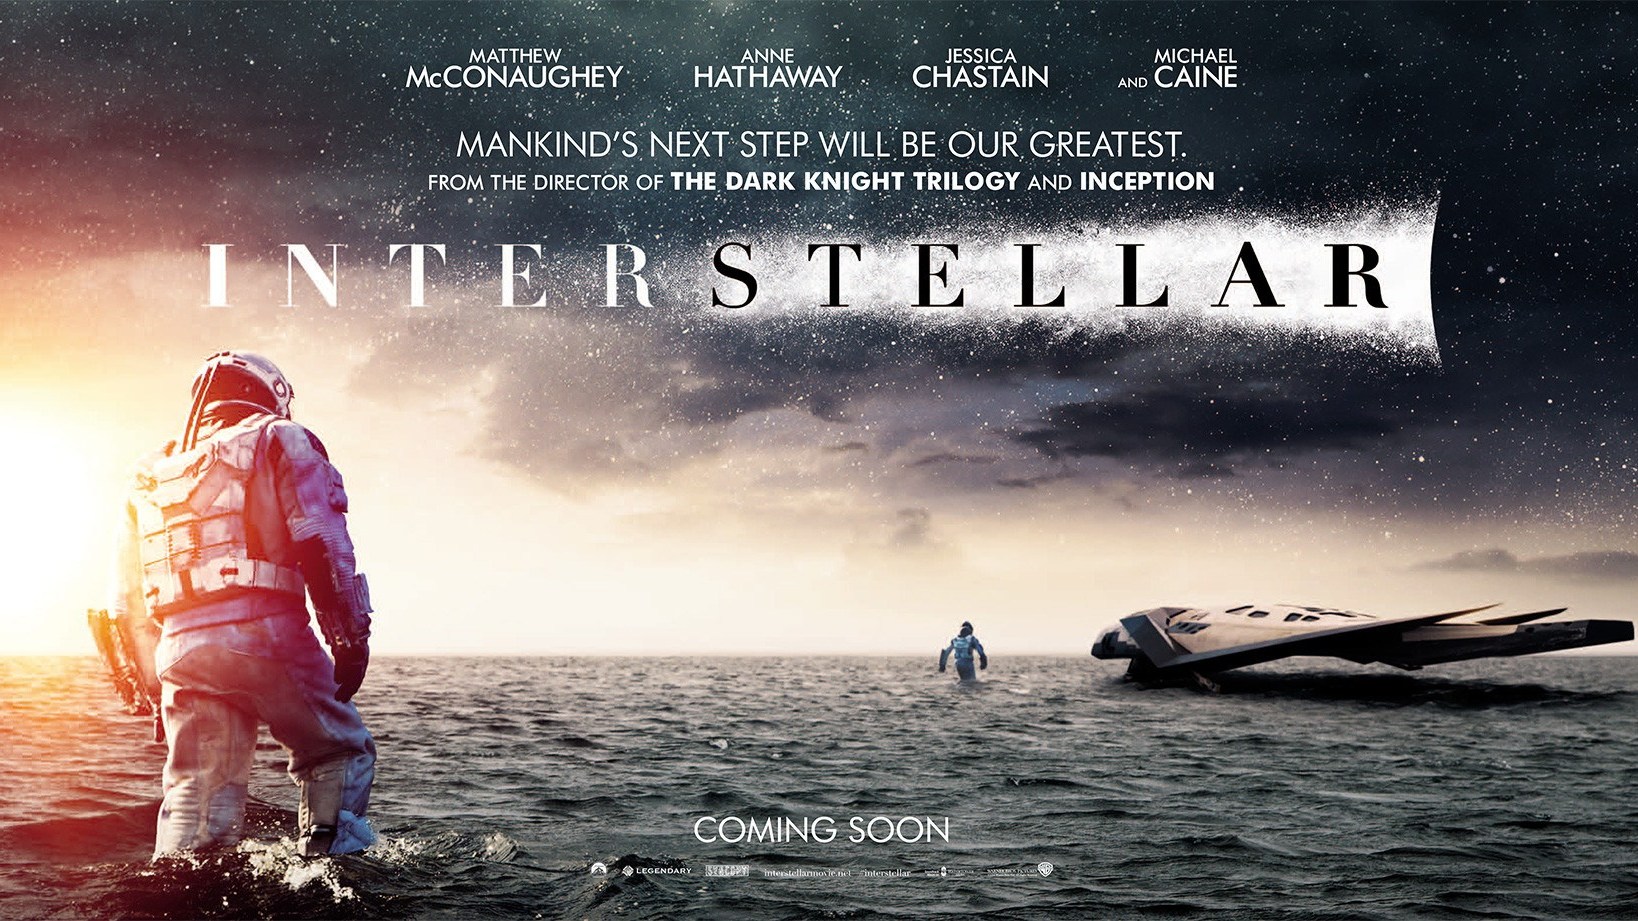 Volledig nieuwe trailer & featurette 'Interstellar'